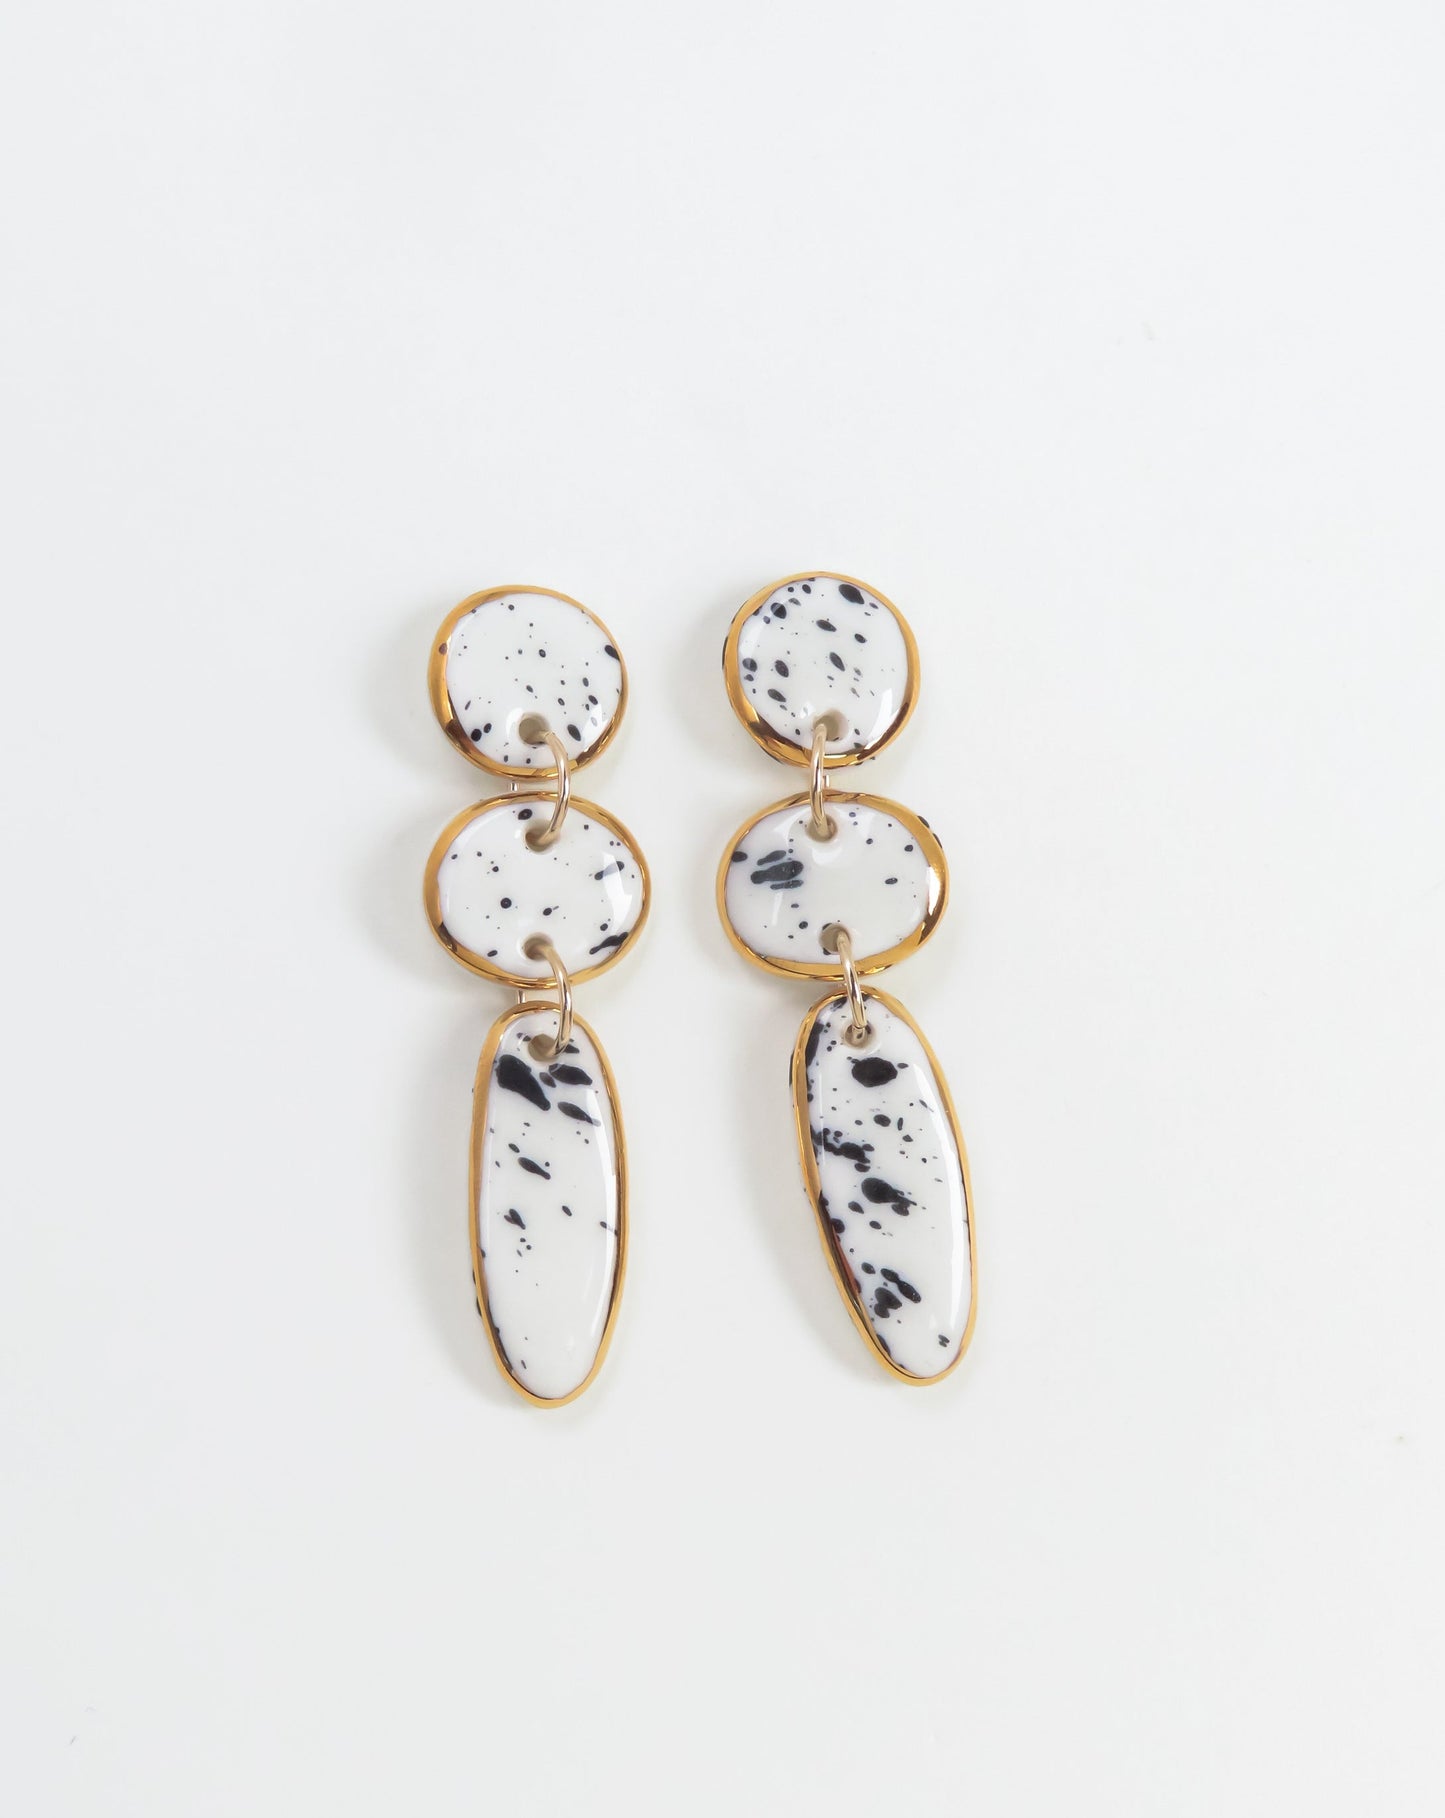 Lara Porcelain Earrings by Nina Bosch Jewellery